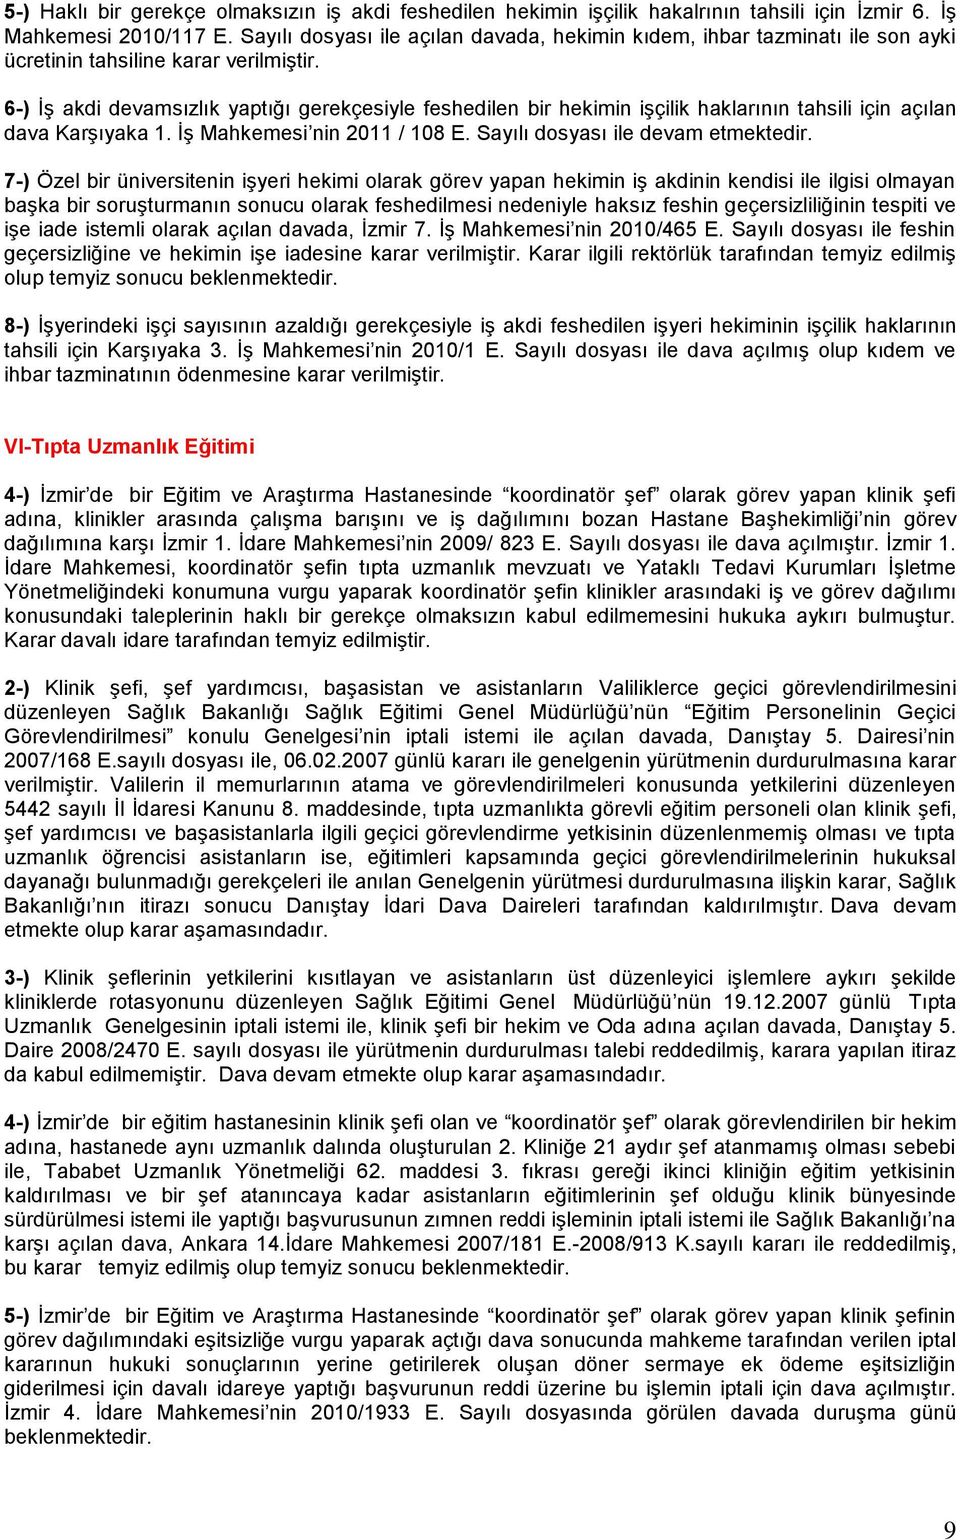 6-) İş akdi devamsızlık yaptığı gerekçesiyle feshedilen bir hekimin işçilik haklarının tahsili için açılan dava Karşıyaka 1. İş Mahkemesi nin 2011 / 108 E. Sayılı dosyası ile devam etmektedir.